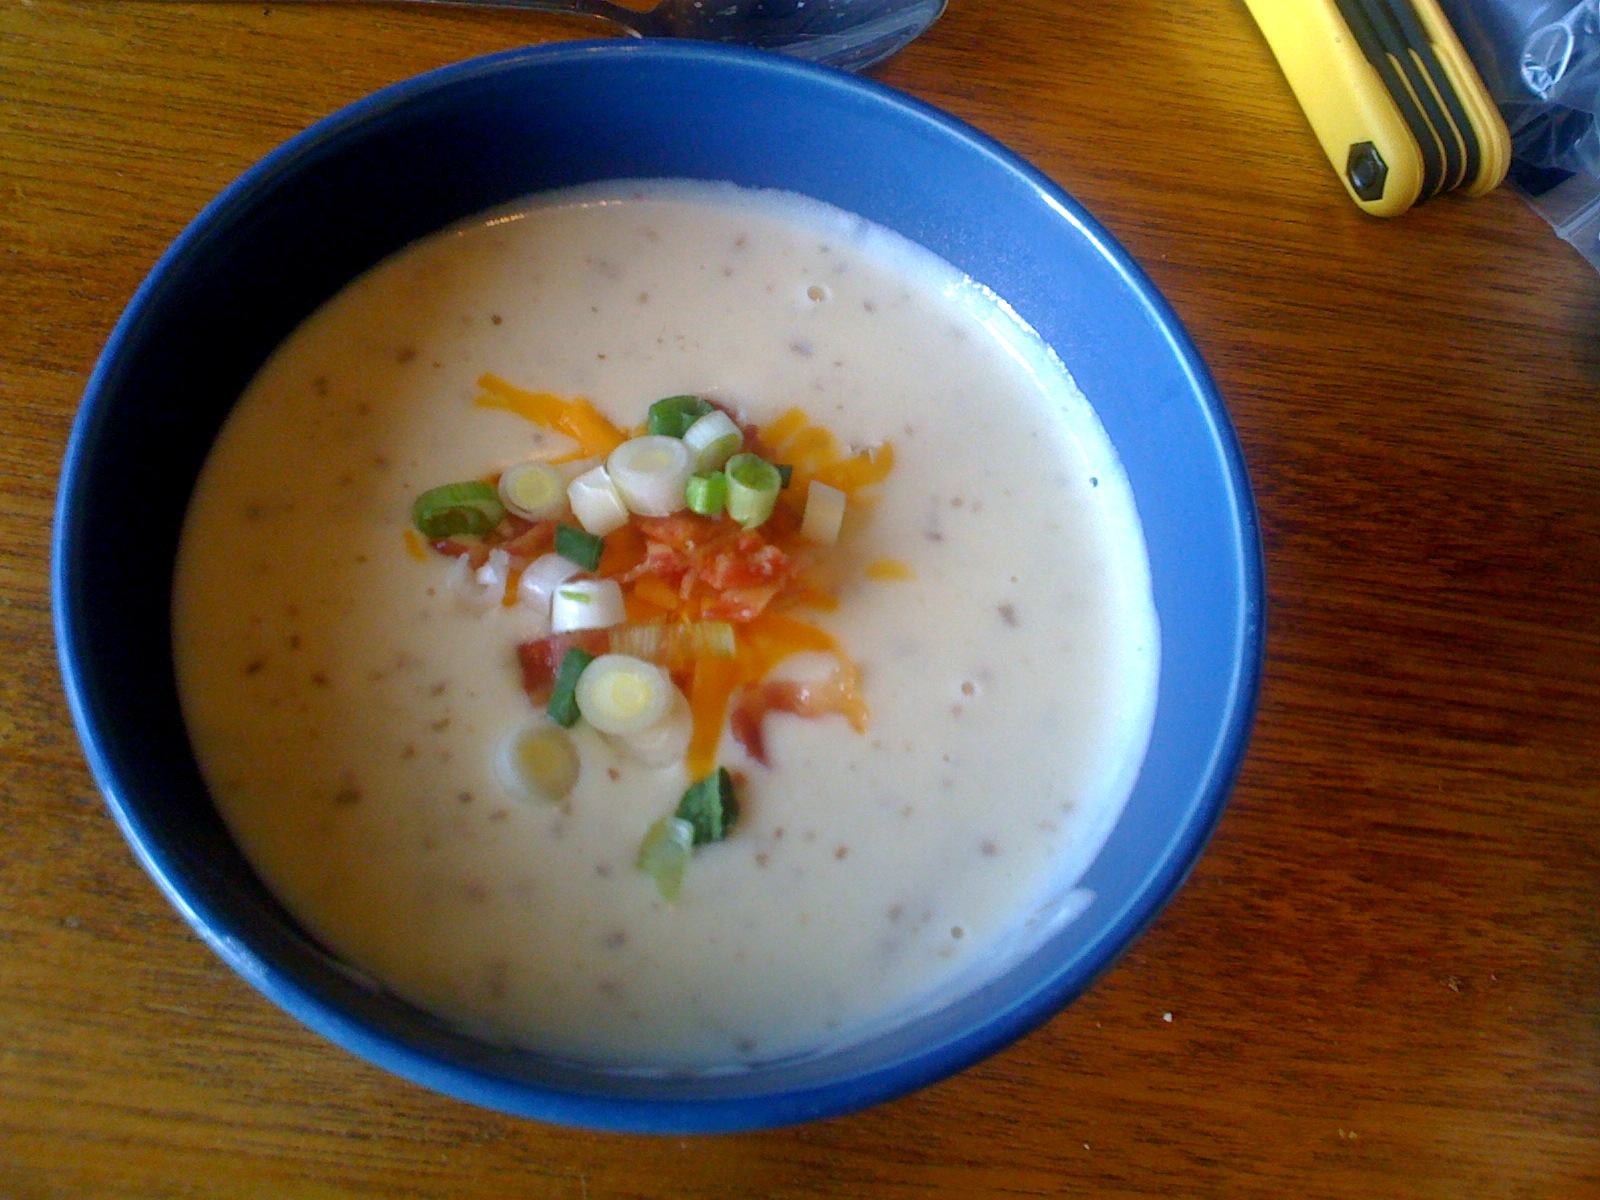 Slow Cooker Houlihan's Potato Soup